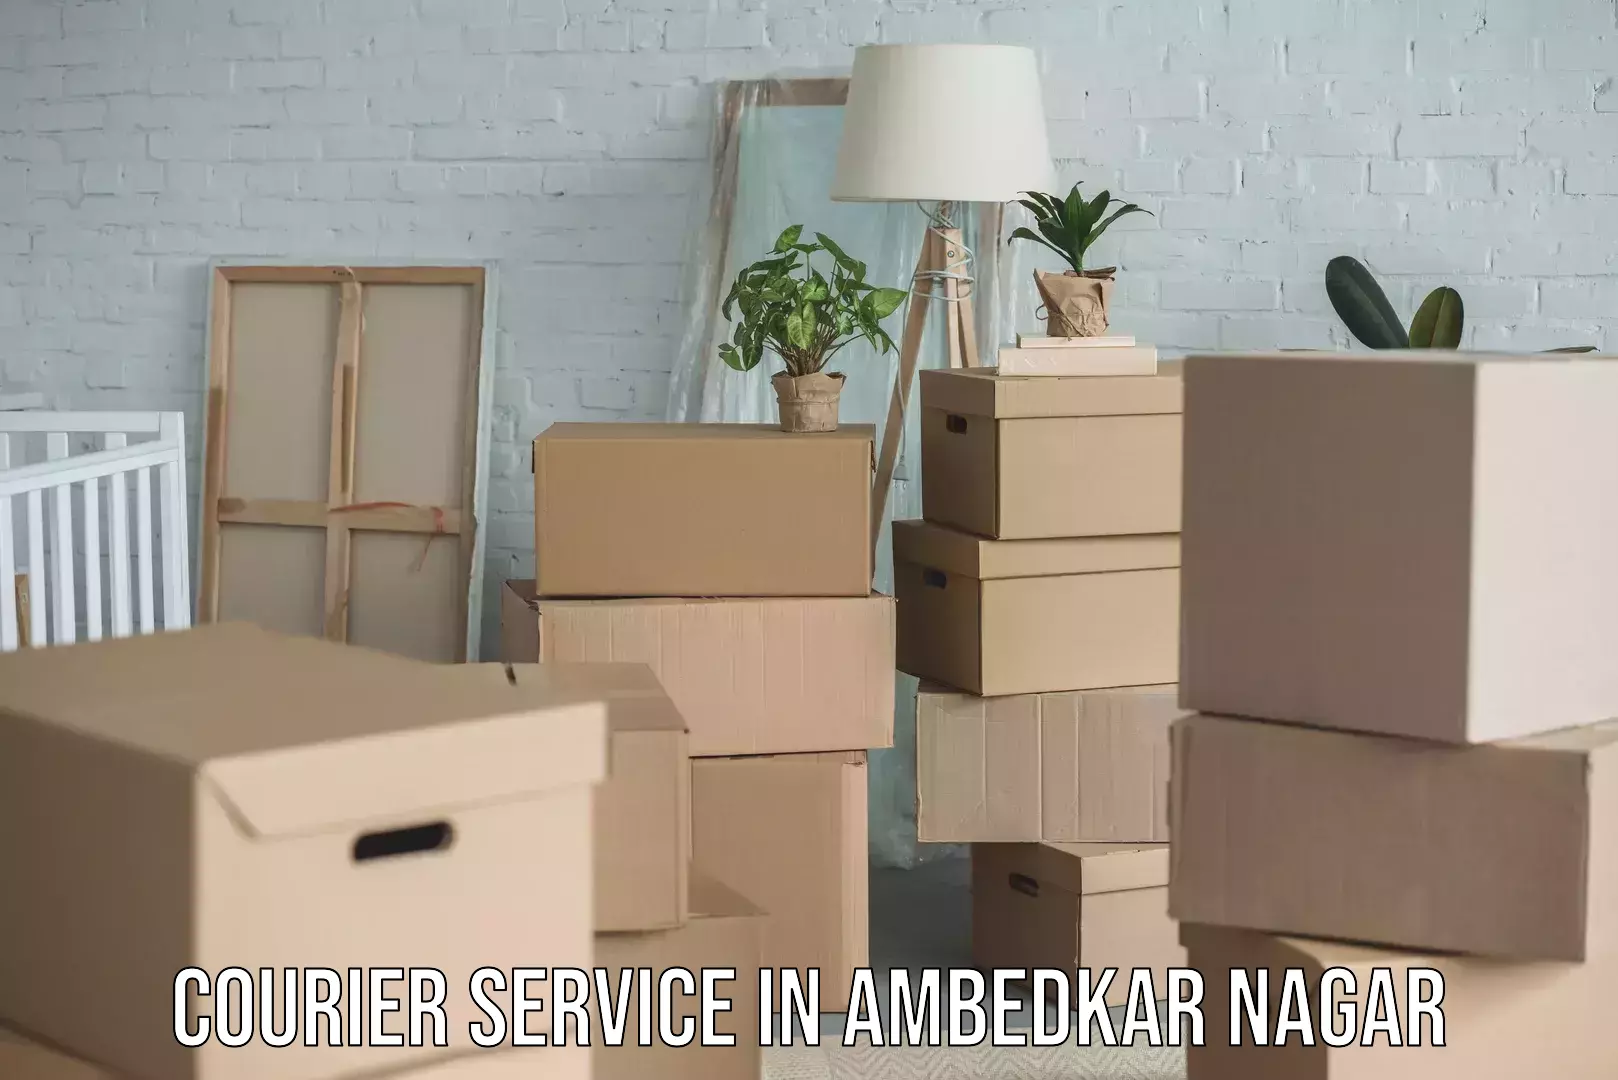 Innovative courier solutions in Ambedkar Nagar